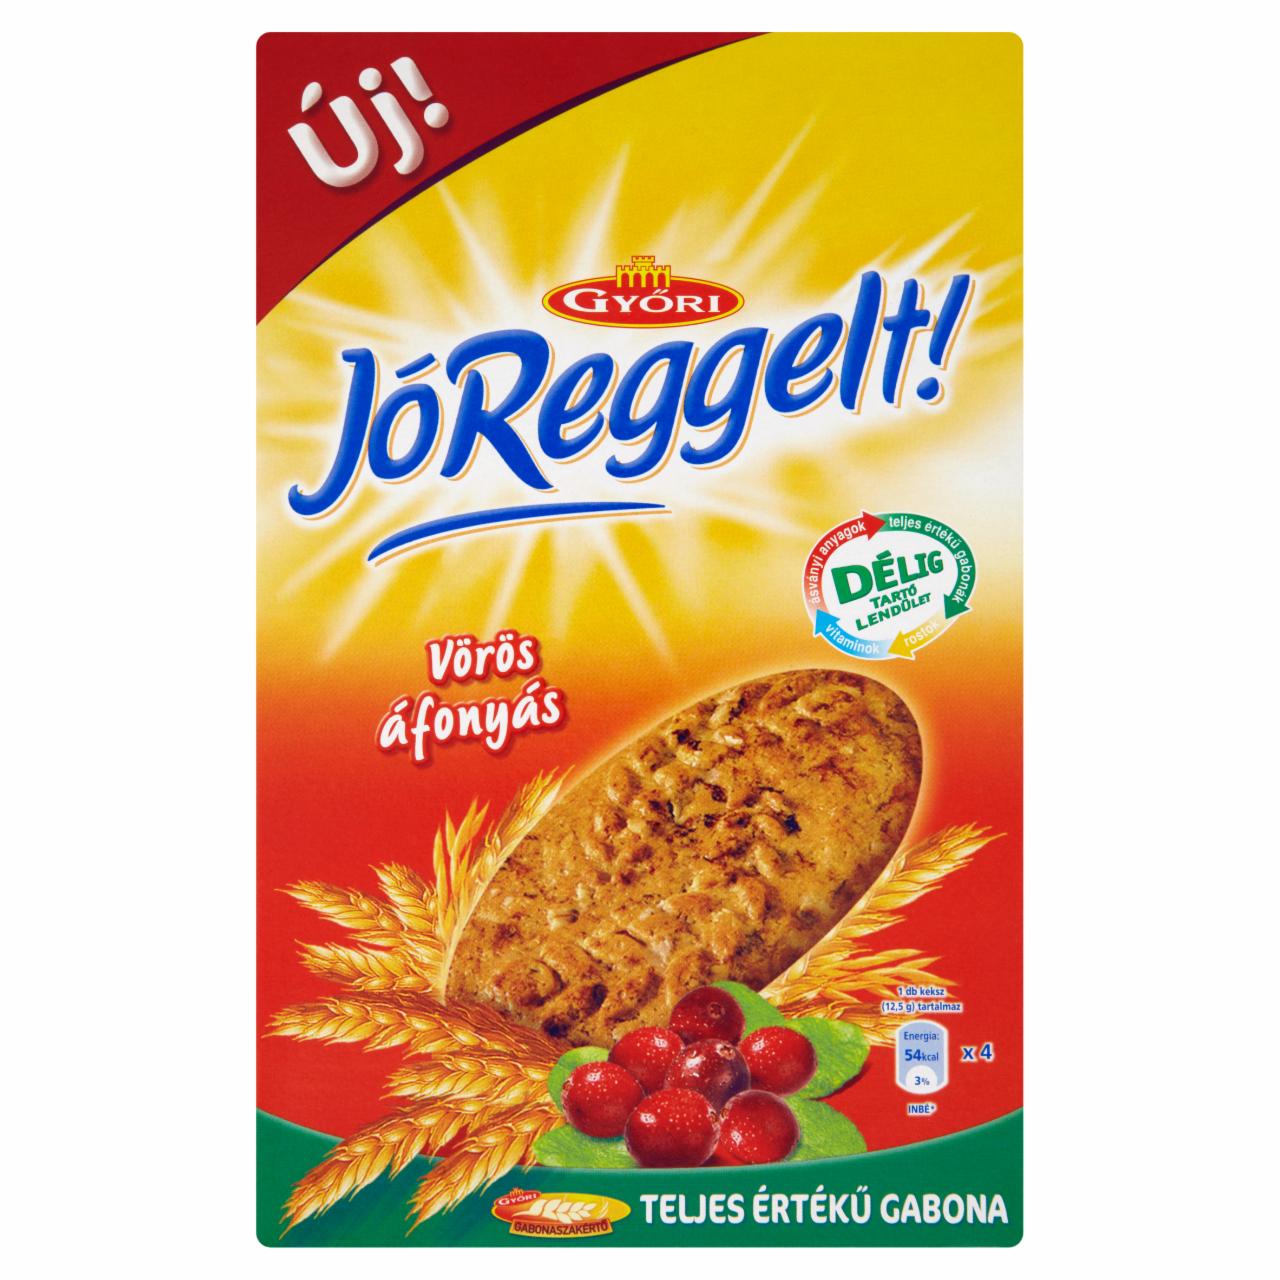 Képek - Győri JóReggelt! vörösáfonyás keksz 8 x 50 g